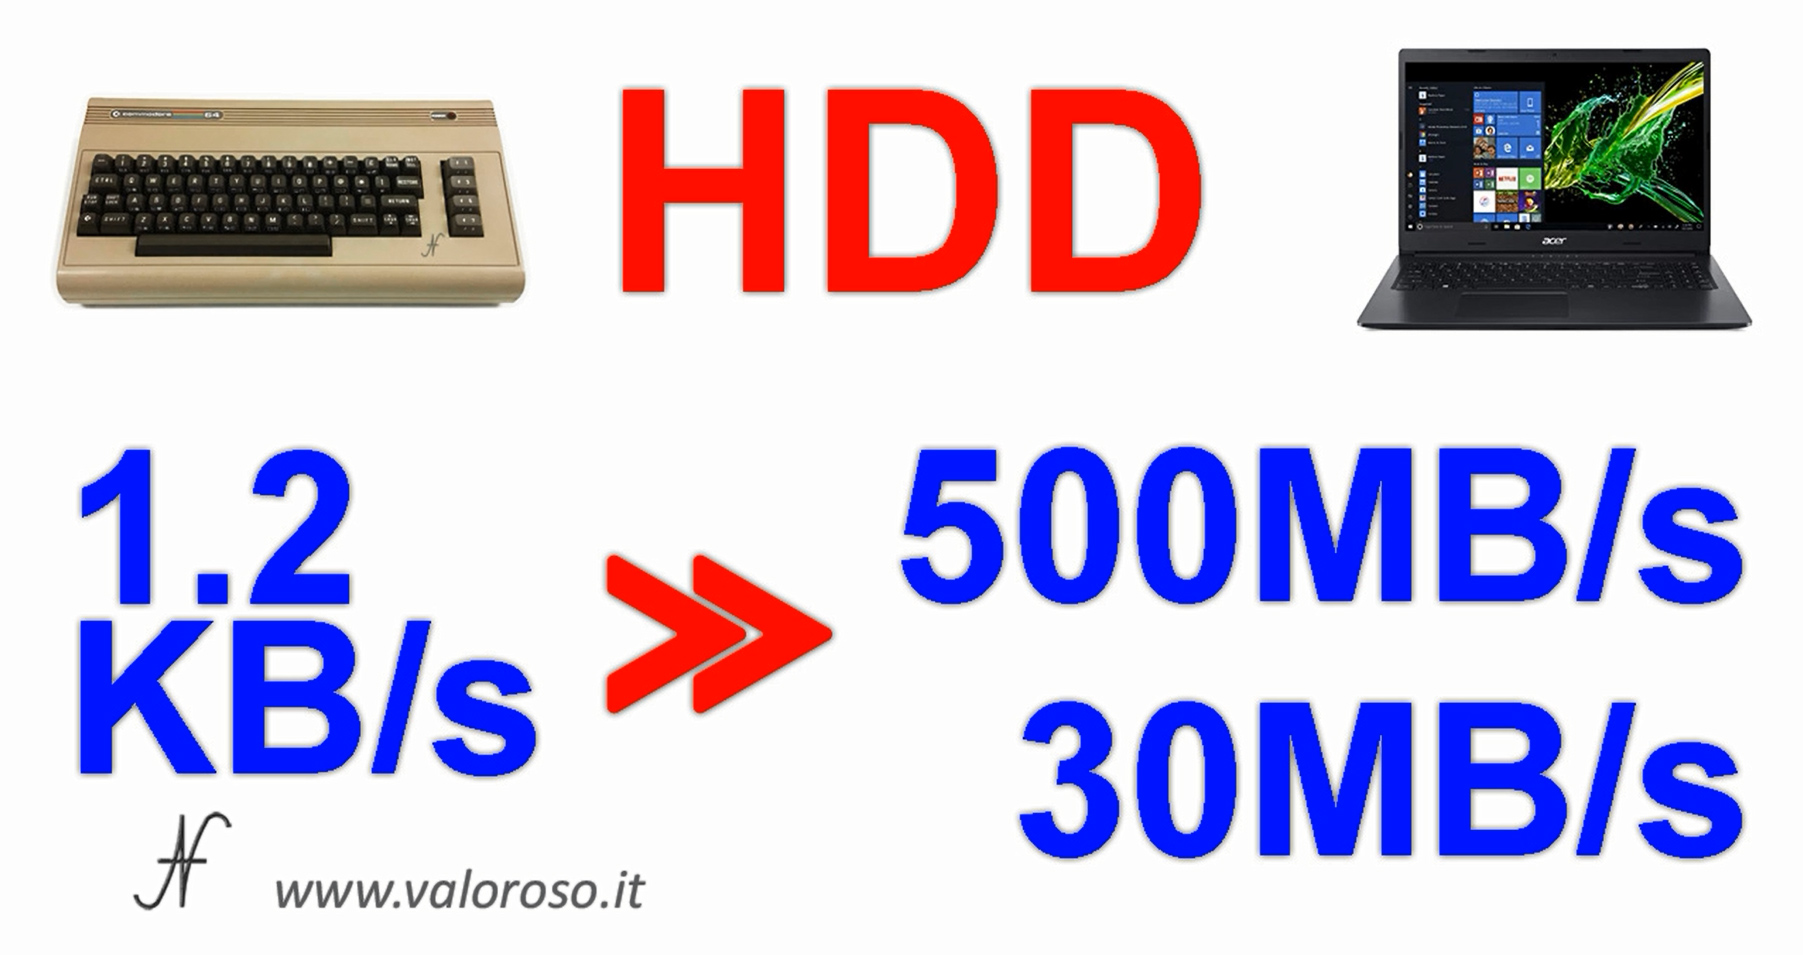 Commodore Vs PC moderno, confronto velocita HDD hard disk SSD